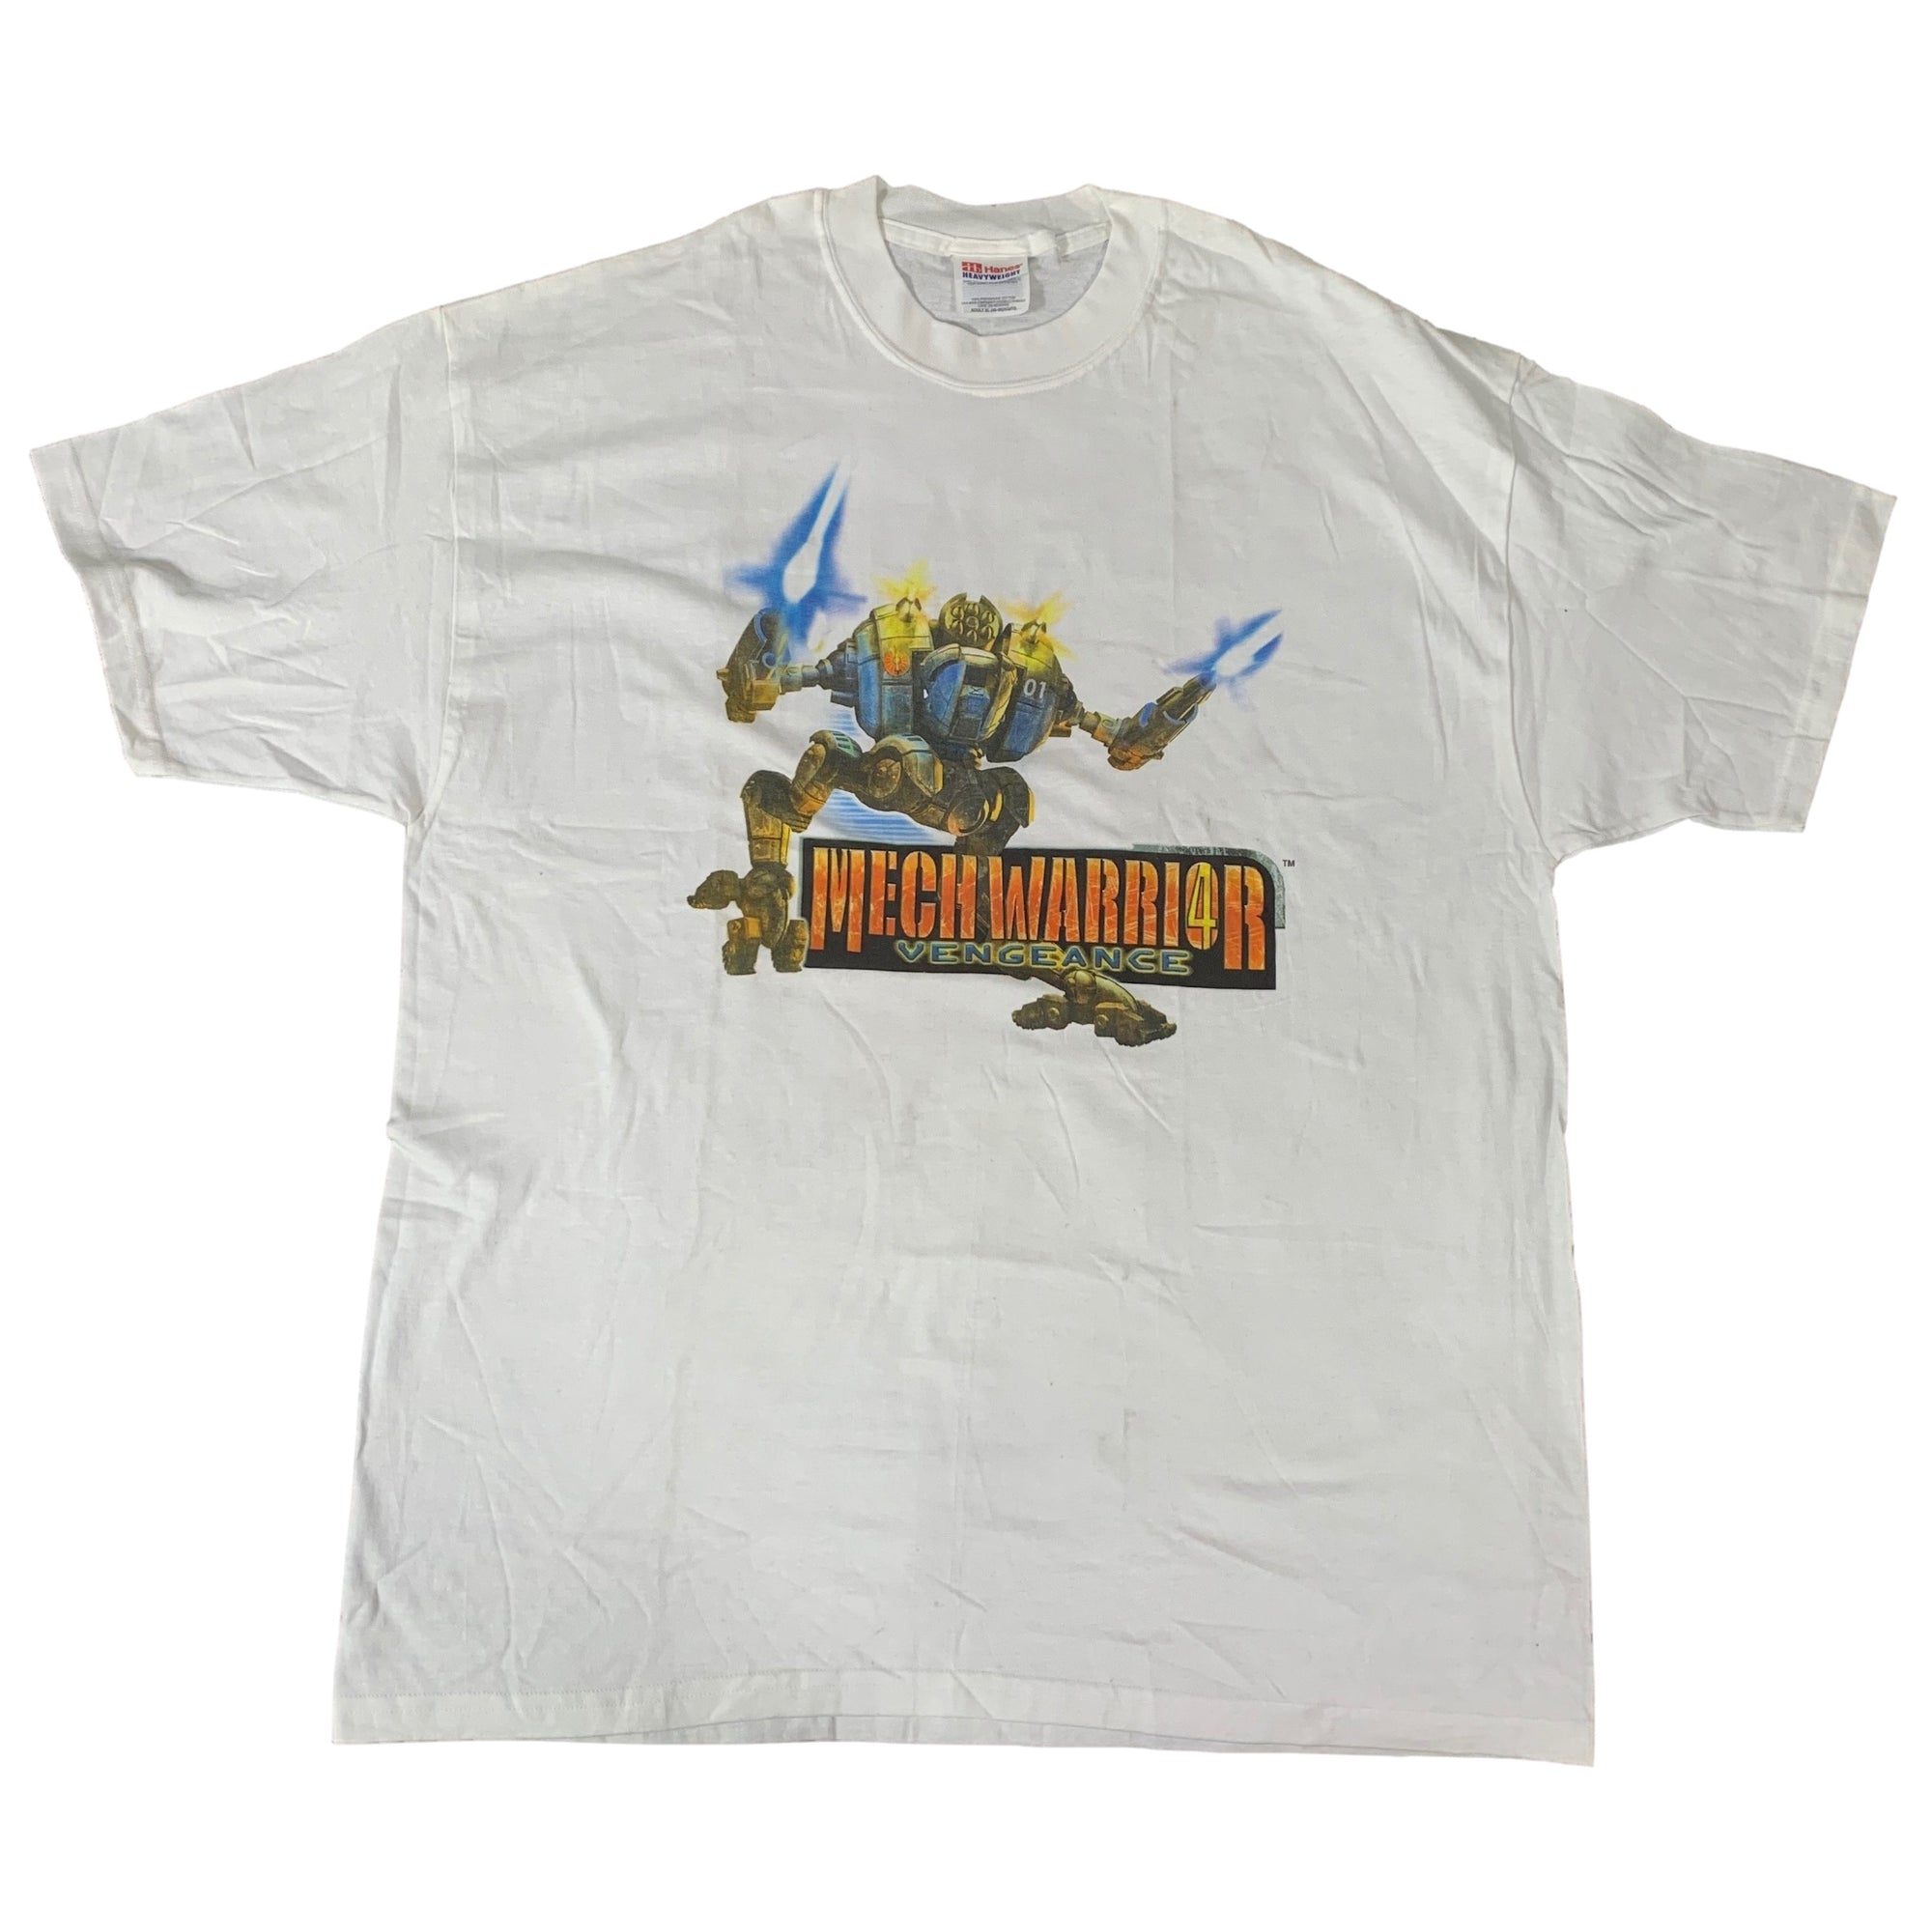 Vintage MechWarrior 4 "Vengeance" T-Shirt - jointcustodydc